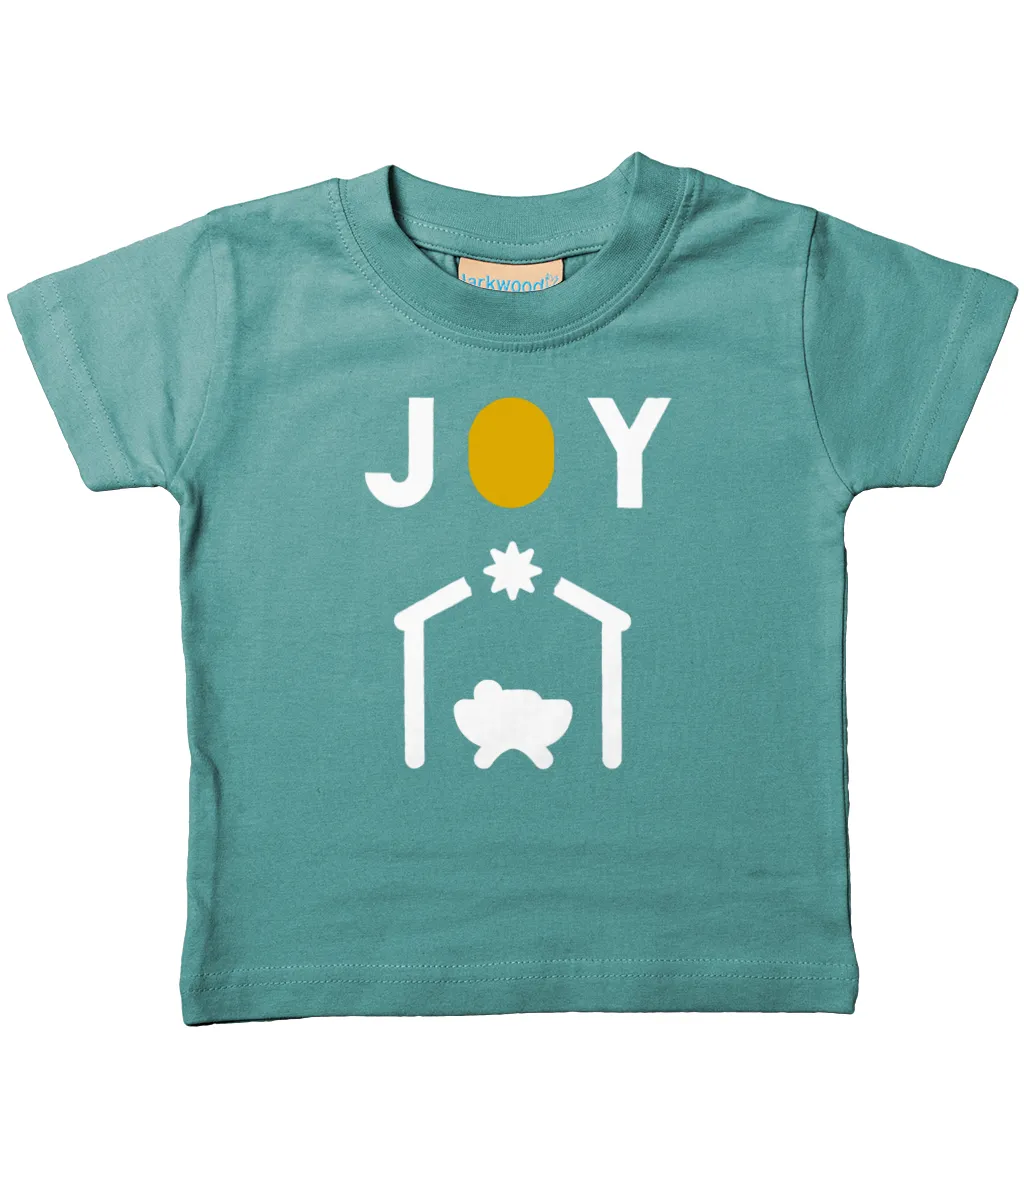 Kids 'JOY' T-shirt (0-6 years)